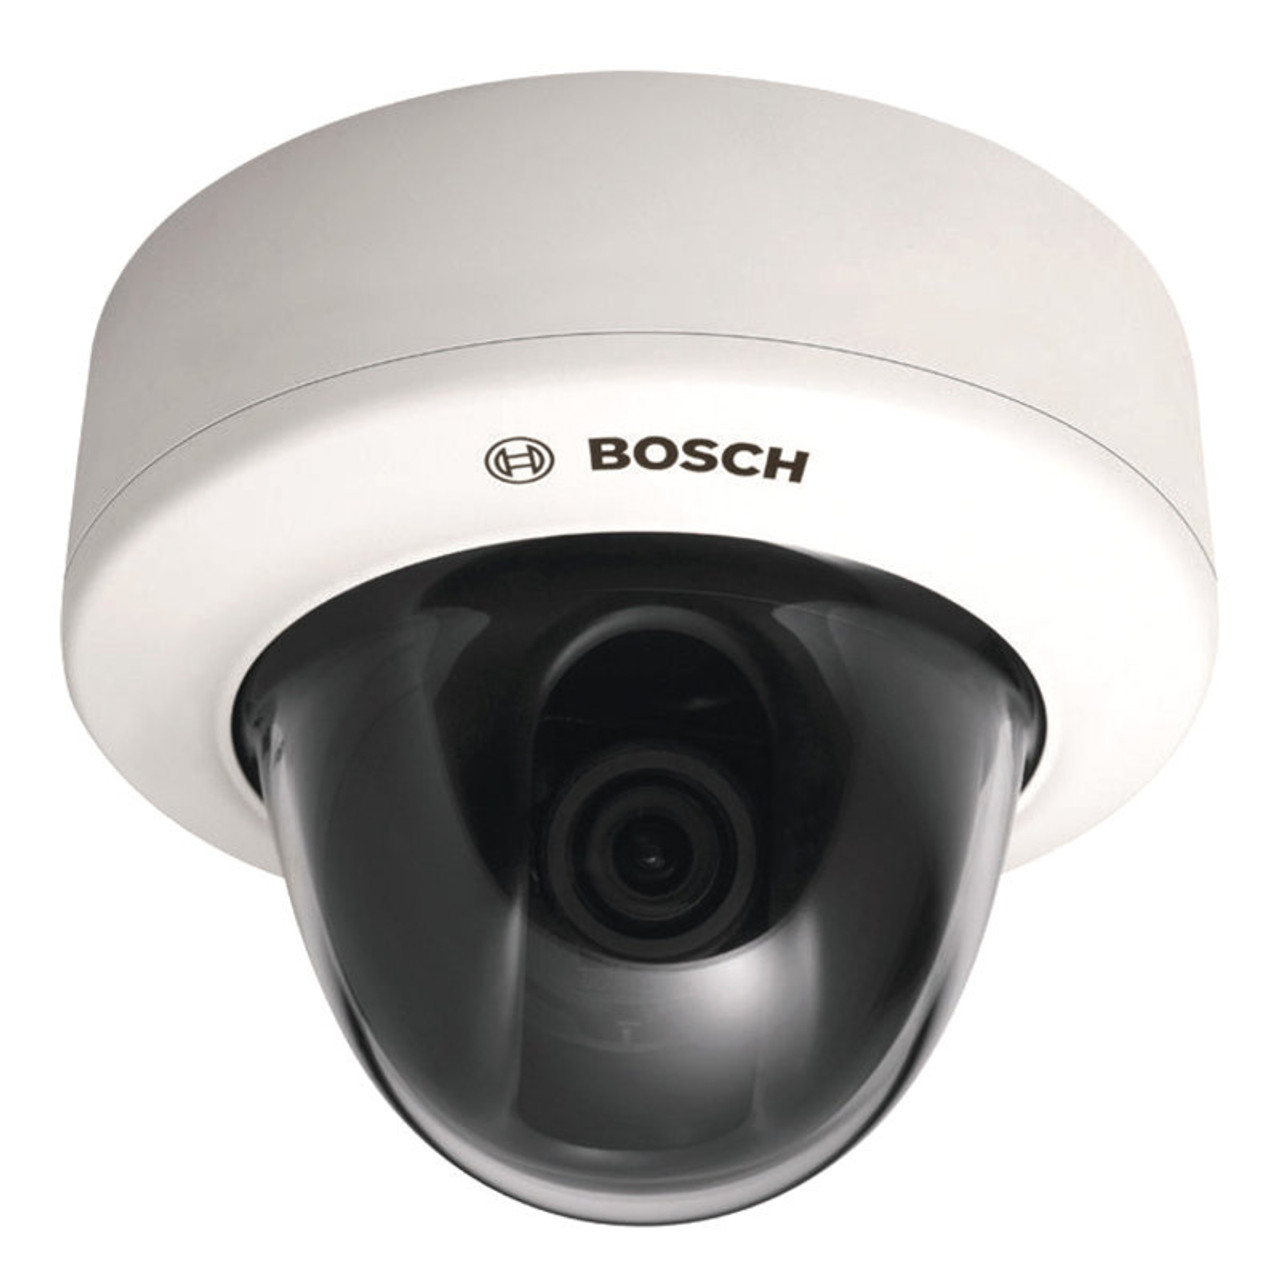 Bosch VDC-480V04-20S Indoor Dome CCTV Camera